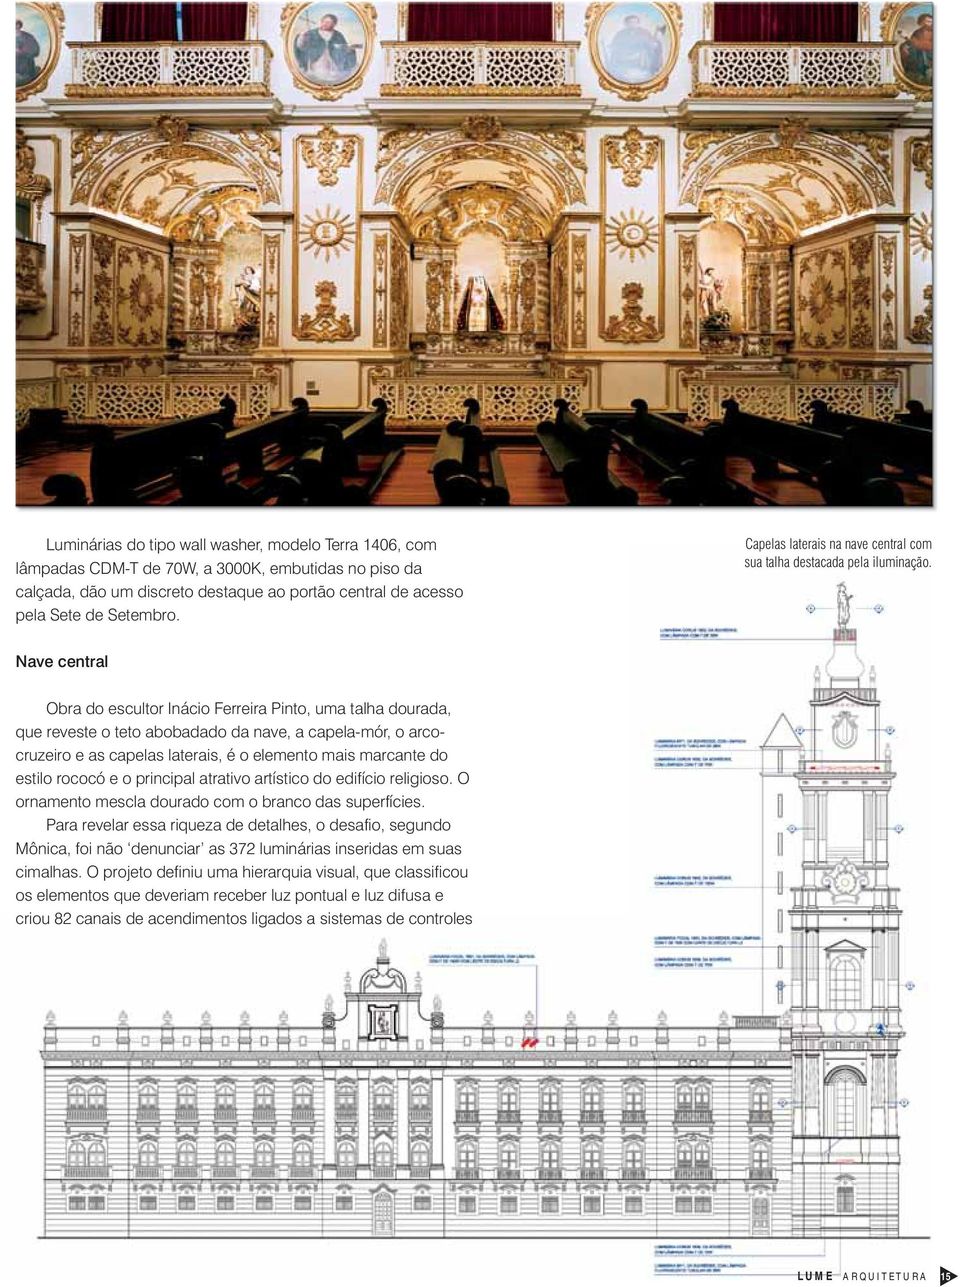 Nave central Obra do escultor Inácio Ferreira Pinto, uma talha dourada, que reveste o teto abobadado da nave, a capela-mór, o arcocruzeiro e as capelas laterais, é o elemento mais marcante do estilo